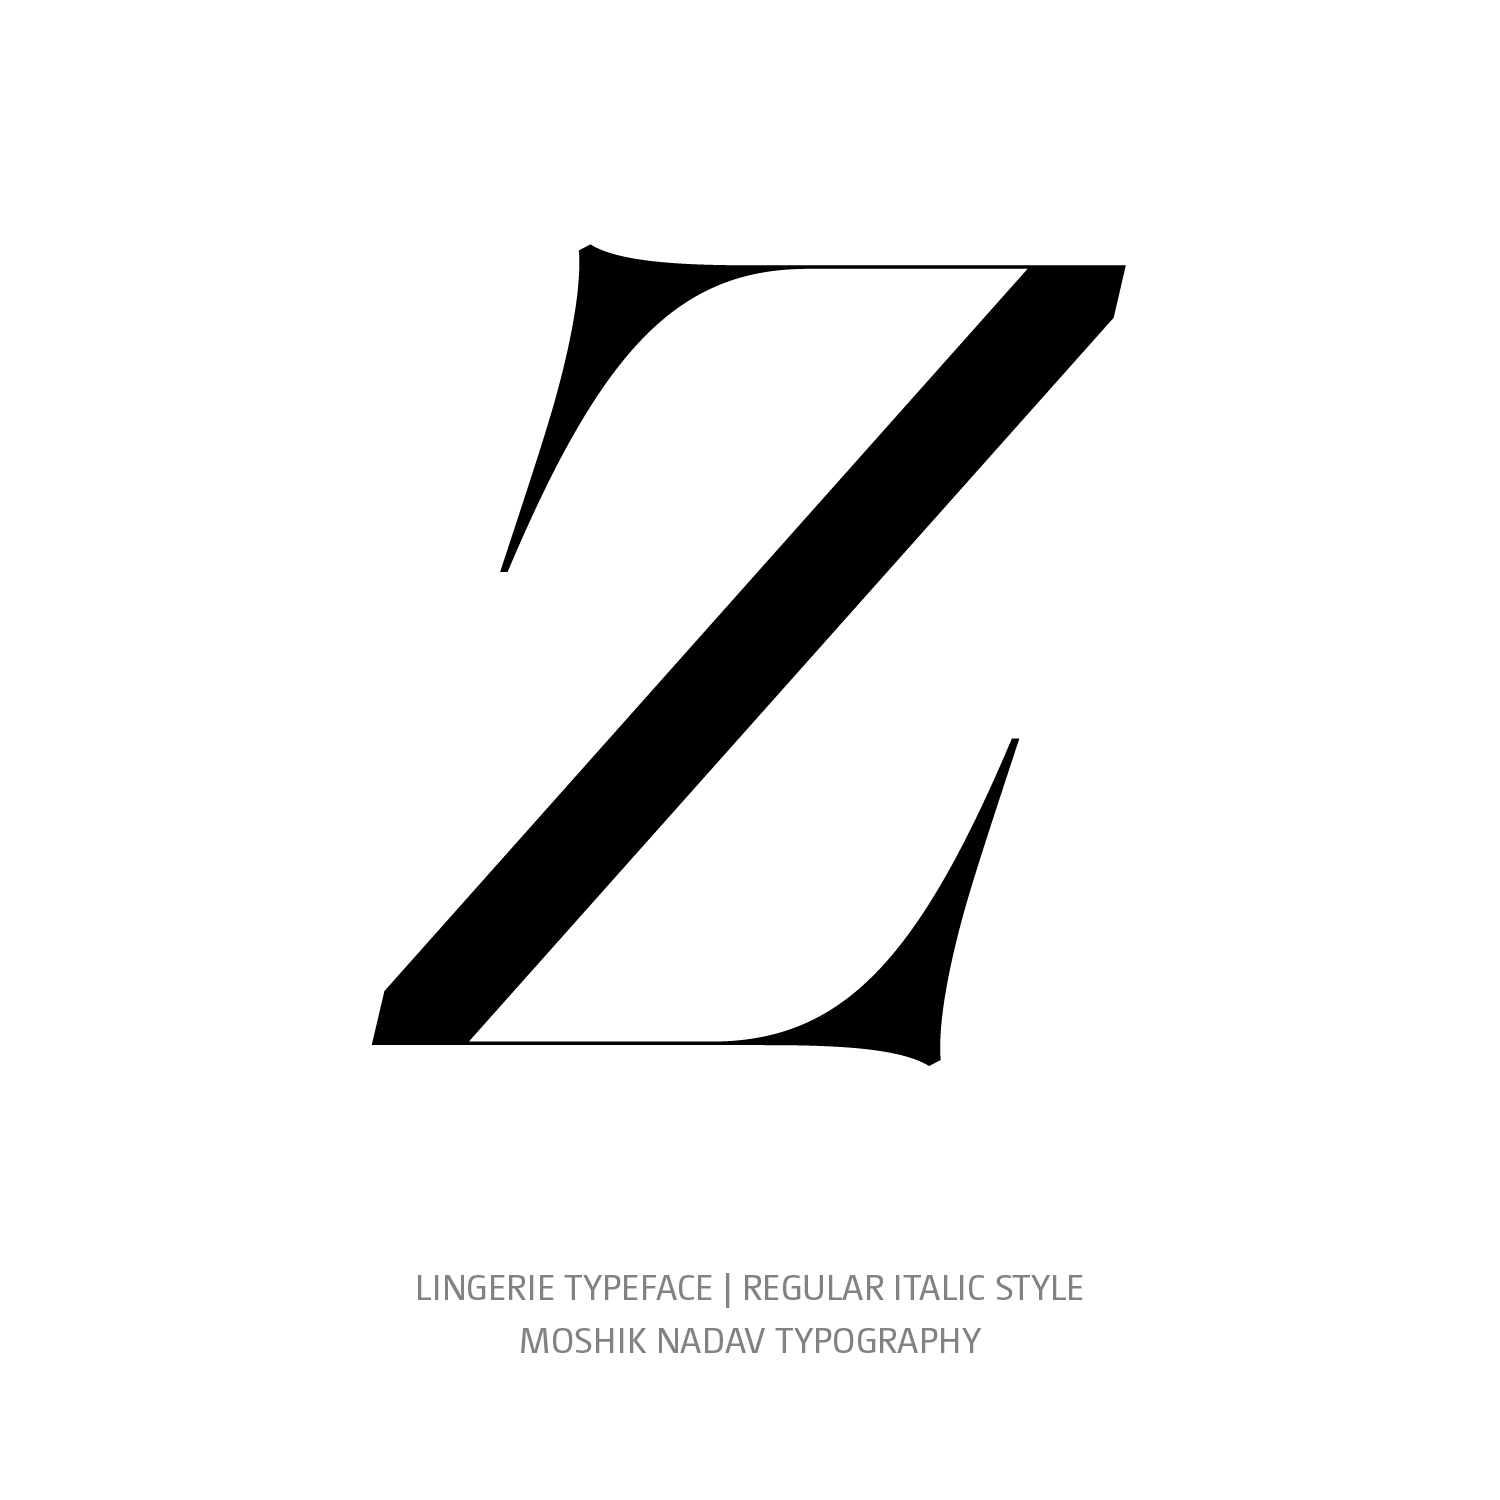 Lingerie Typeface Regular Italic Z - Fashion fonts by Moshik Nadav Typography